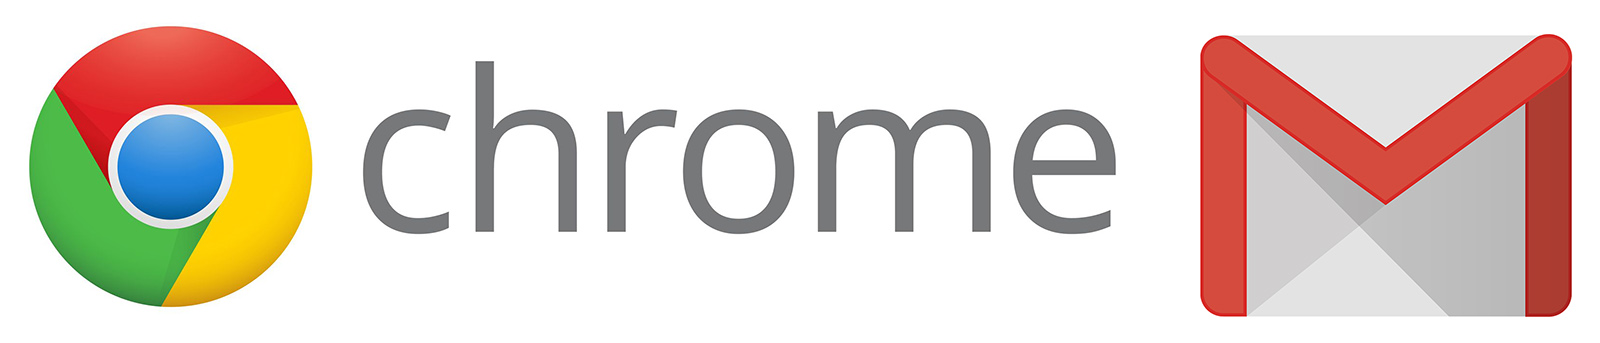 chrome-logo.jpg